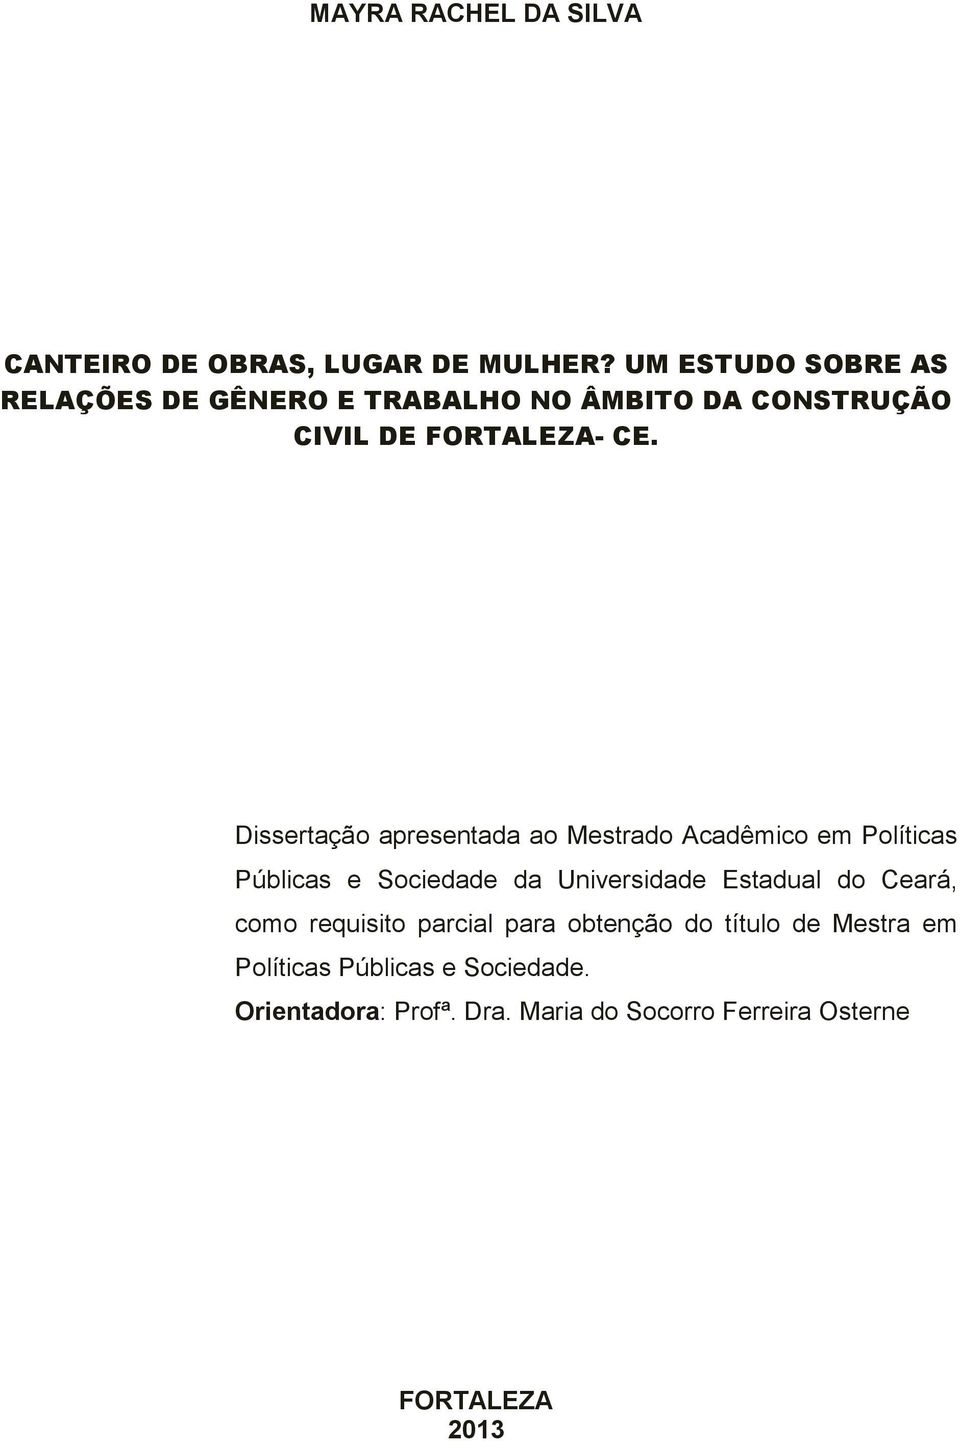 Dissertação apresentada ao Mestrado Acadêmico em Políticas Públicas e Sociedade da Universidade Estadual do